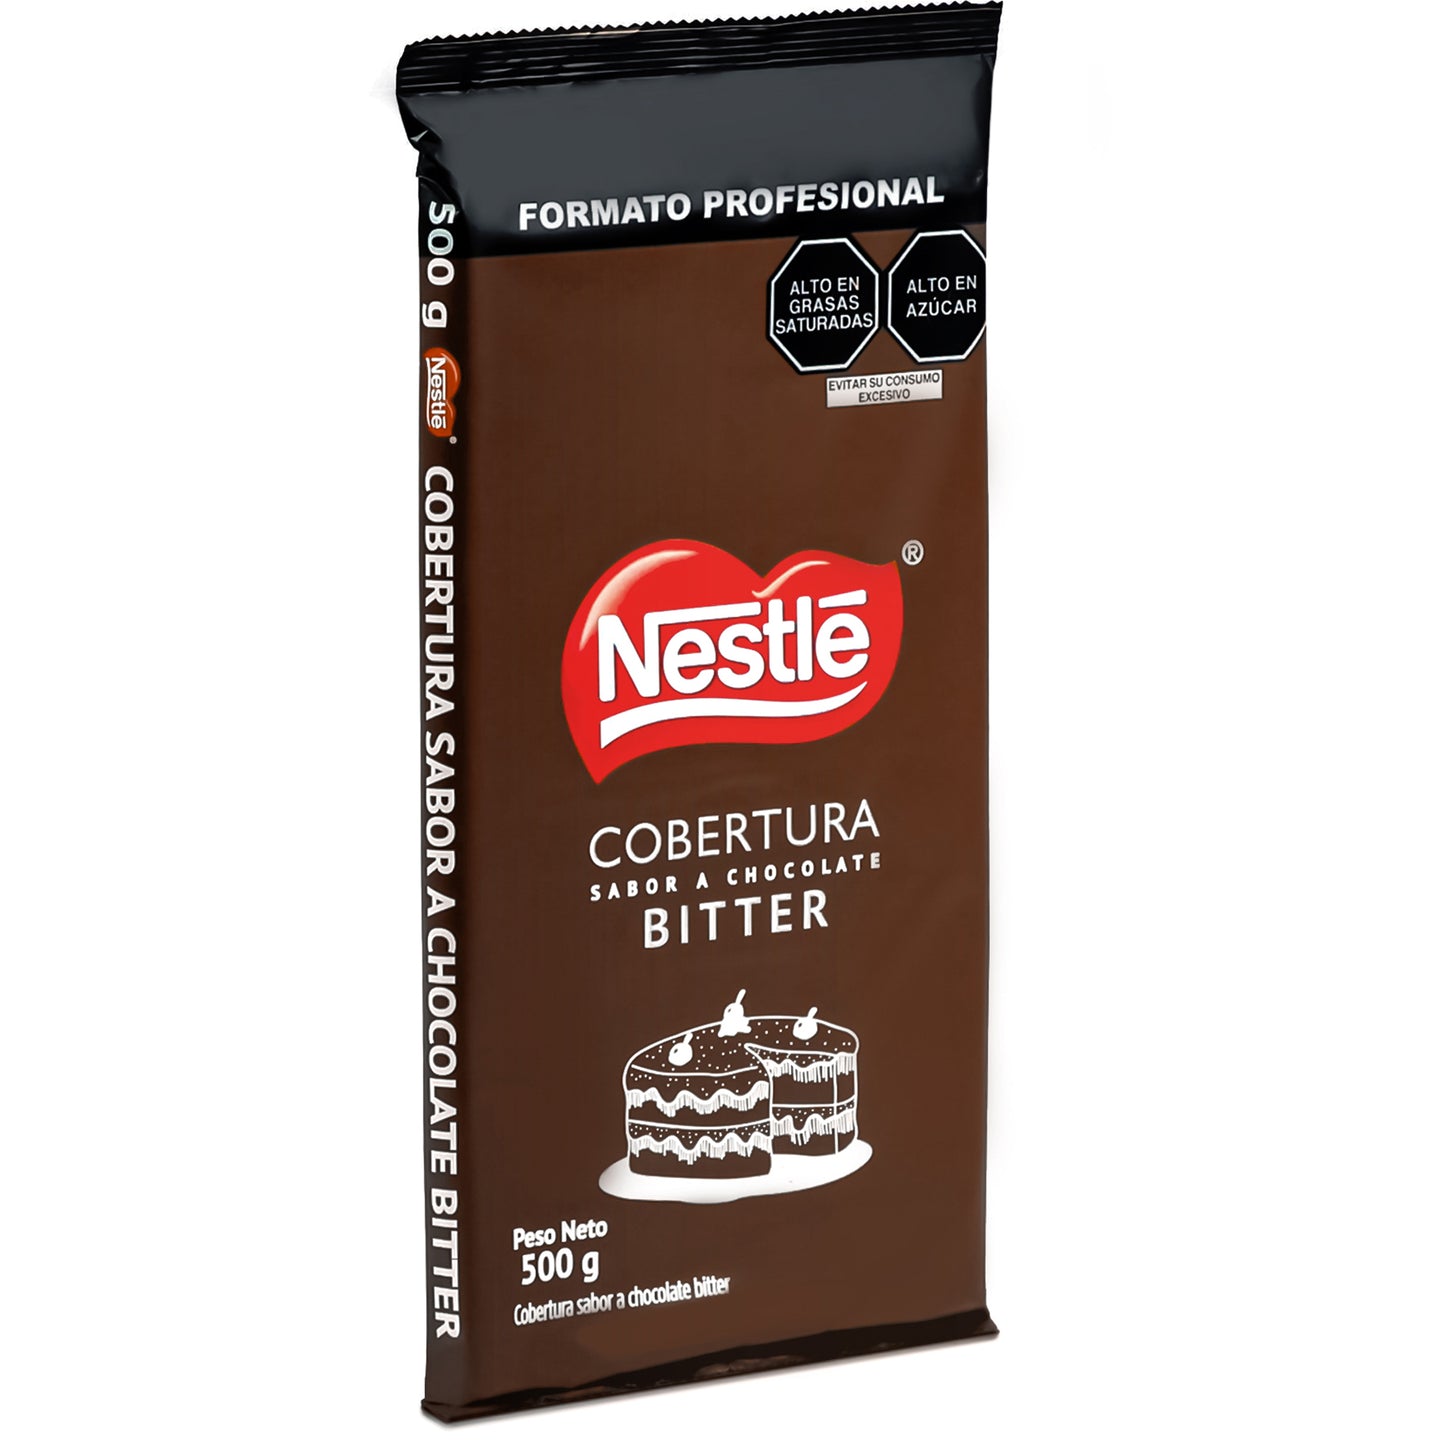 Cobertura Bitter Nestlé 500 gr.